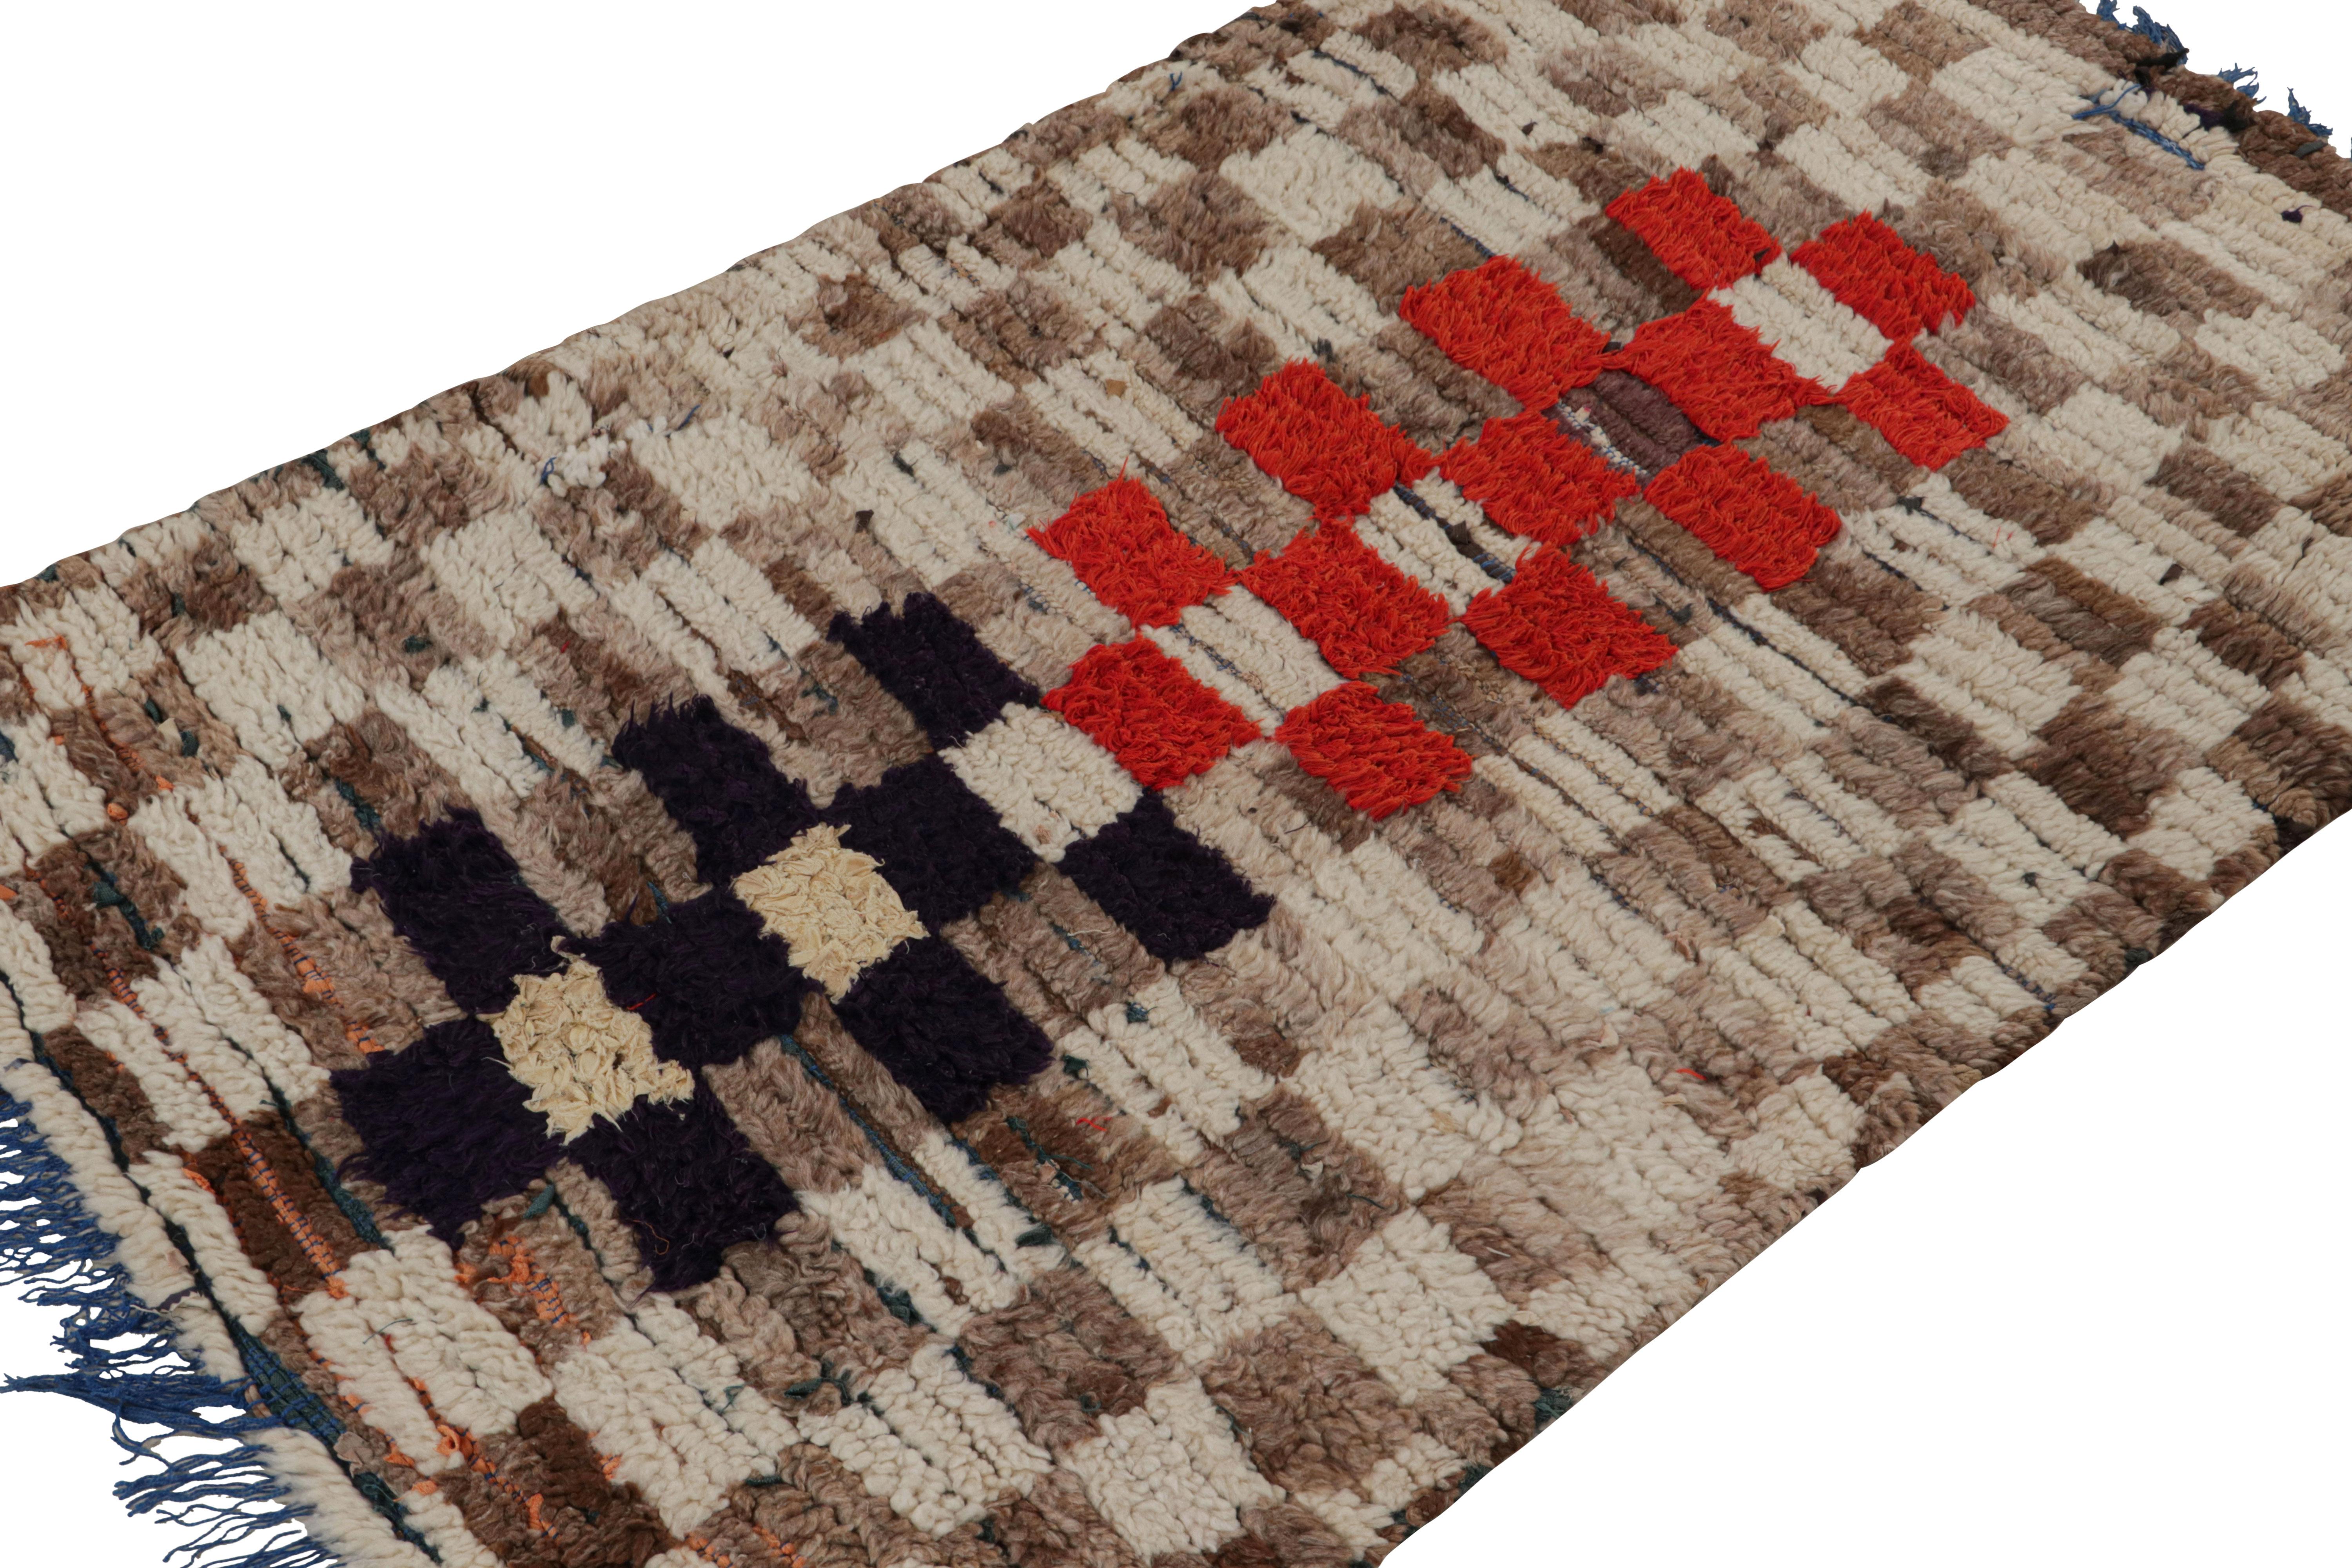 Dieser handgeknüpfte Wollteppich (ca. 1950-1960) mit geometrischen Mustern in Beige-Braun, Rot und Schwarz ist ein marokkanischer Teppich im Format 3x5, der vom Azilal-Stamm stammt.  

Über das Design: 

Kenner bewundern diesen Läufer als ein